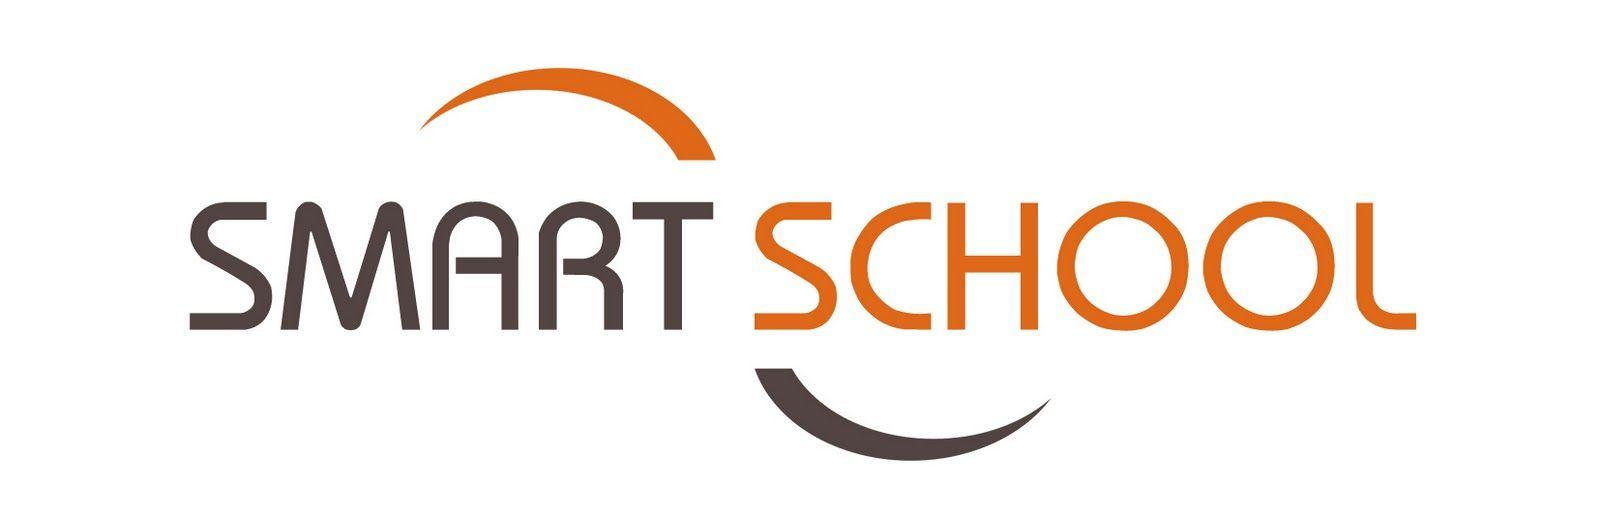 School Smart Logo - School Smart Logo | www.topsimages.com